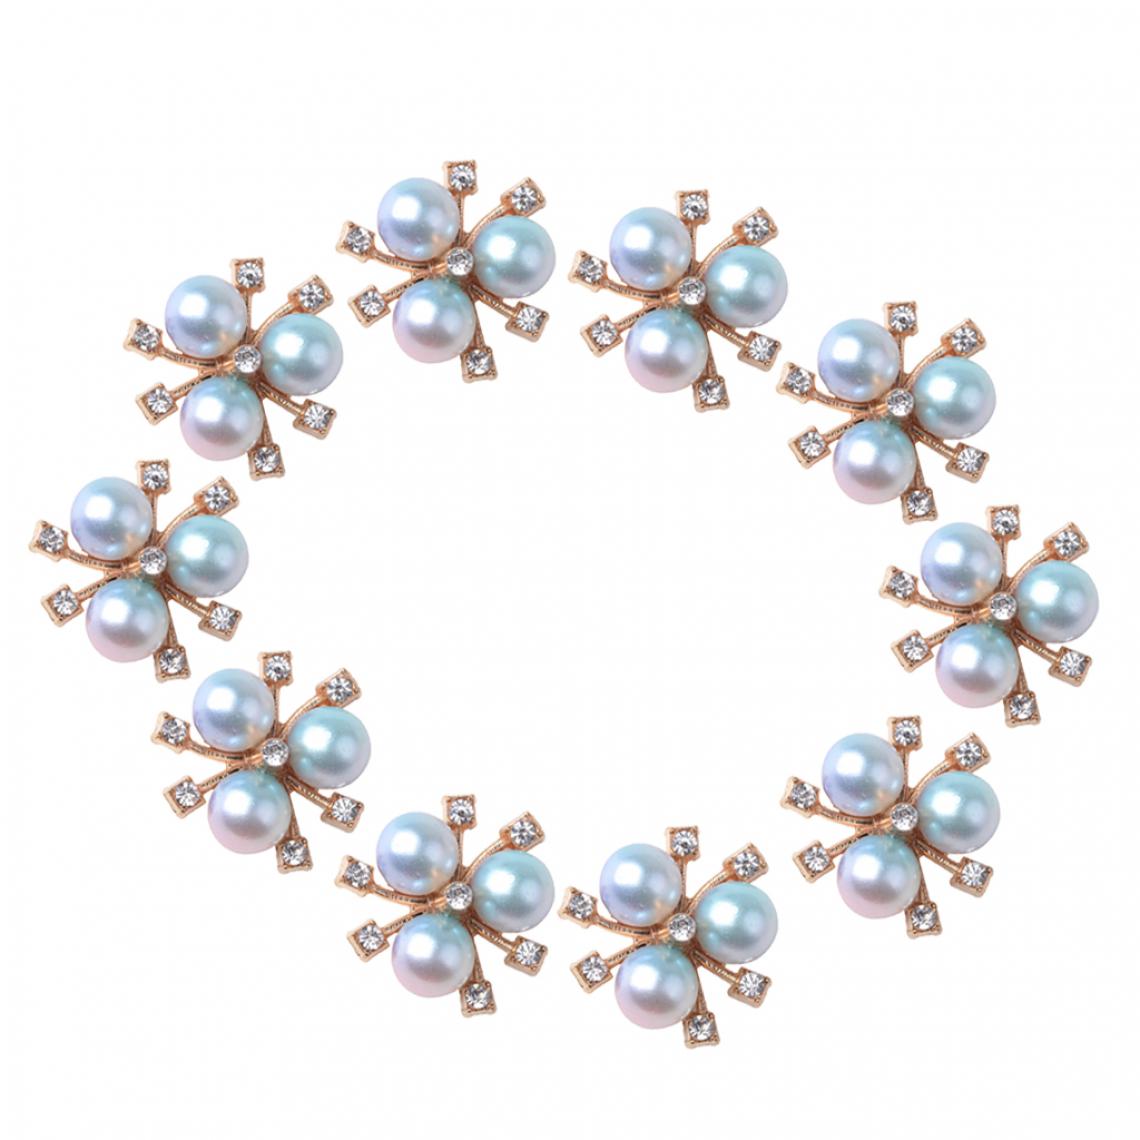 marque generique - 10x Diamante Perle Cristal Strass Boutons Fabrication de Bijoux Résultats 20mm - Poignée de meuble